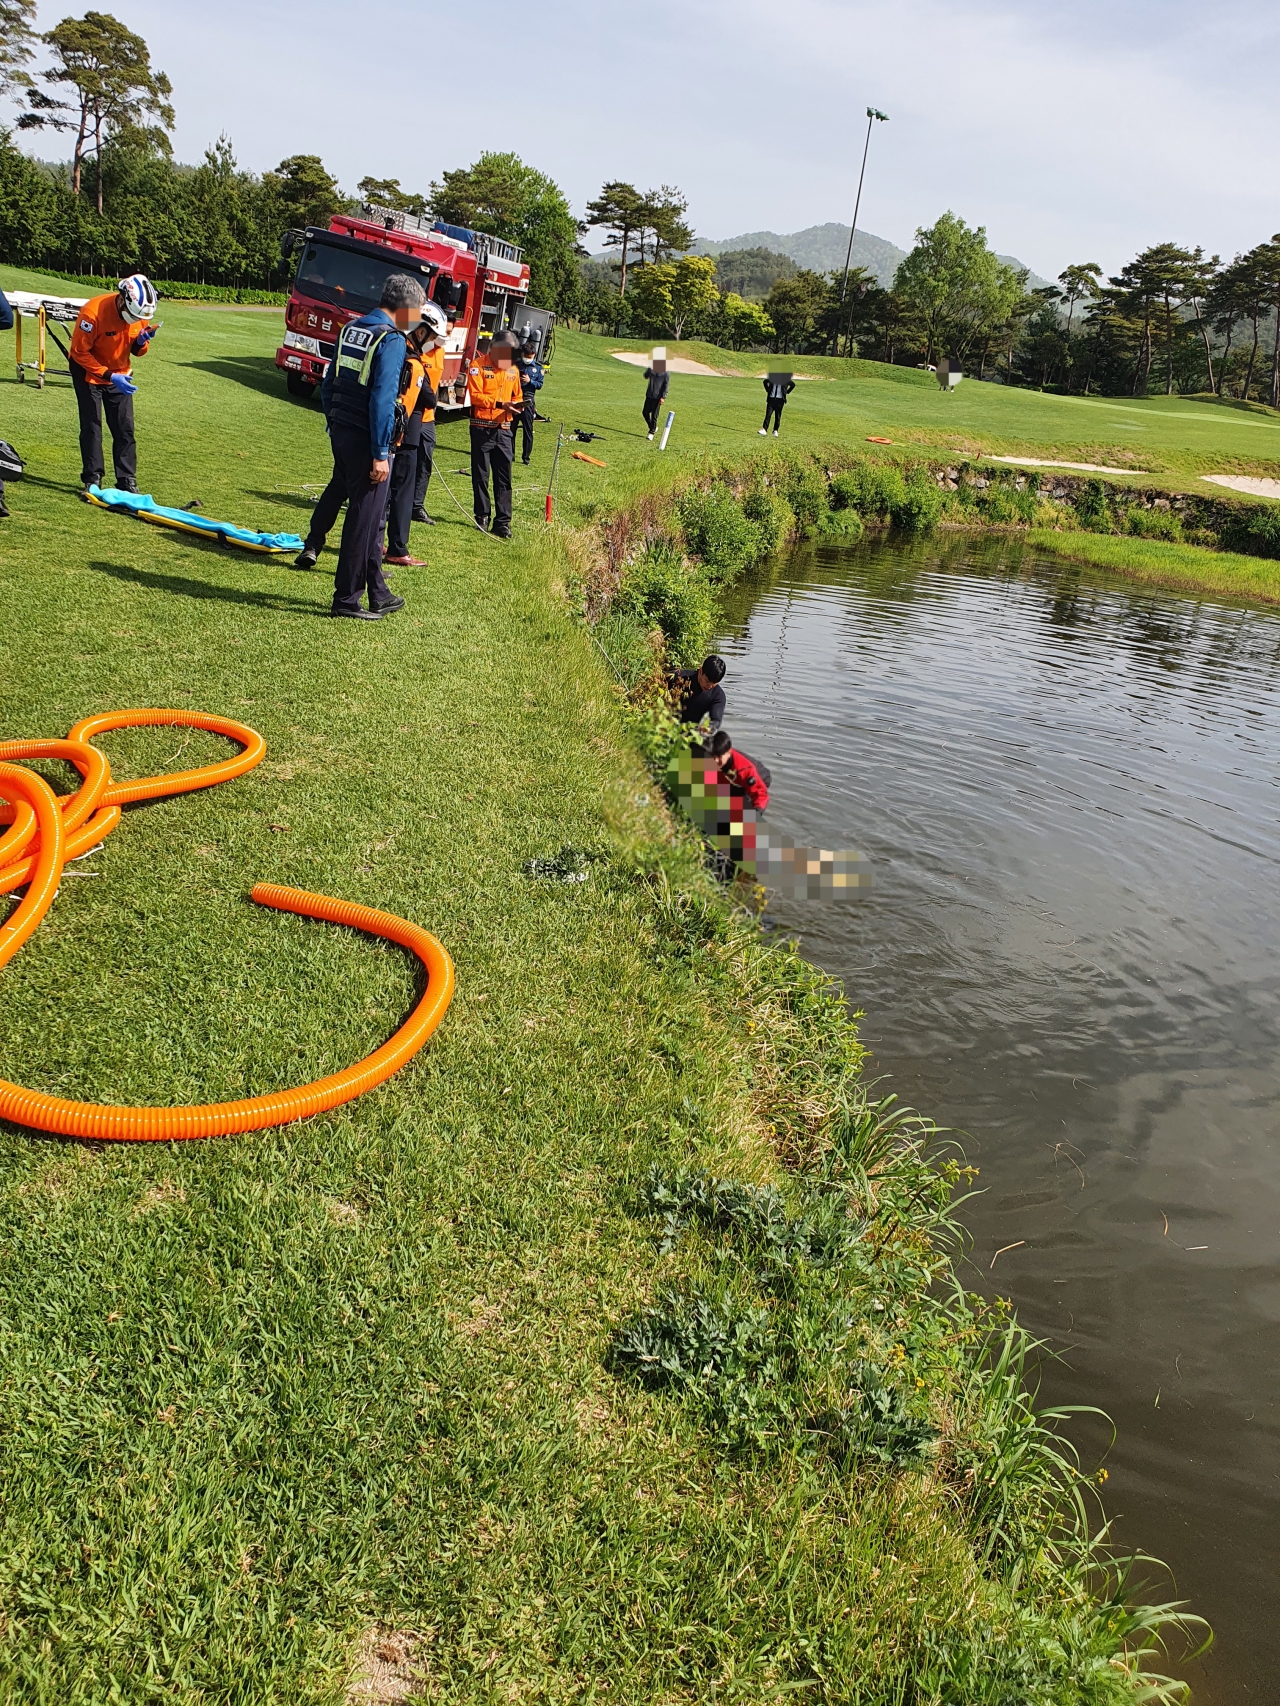 순천의 한 골프장에서 골프를 치던 50대 여성이 물에 빠져 숨졌다. 경찰에 따르면 27일 오전 8시 51분께 순천 모 골프장에서 골프를 치던 A씨(52·여)가 2미터 깊이의 연못(해저드)에 빠졌다.